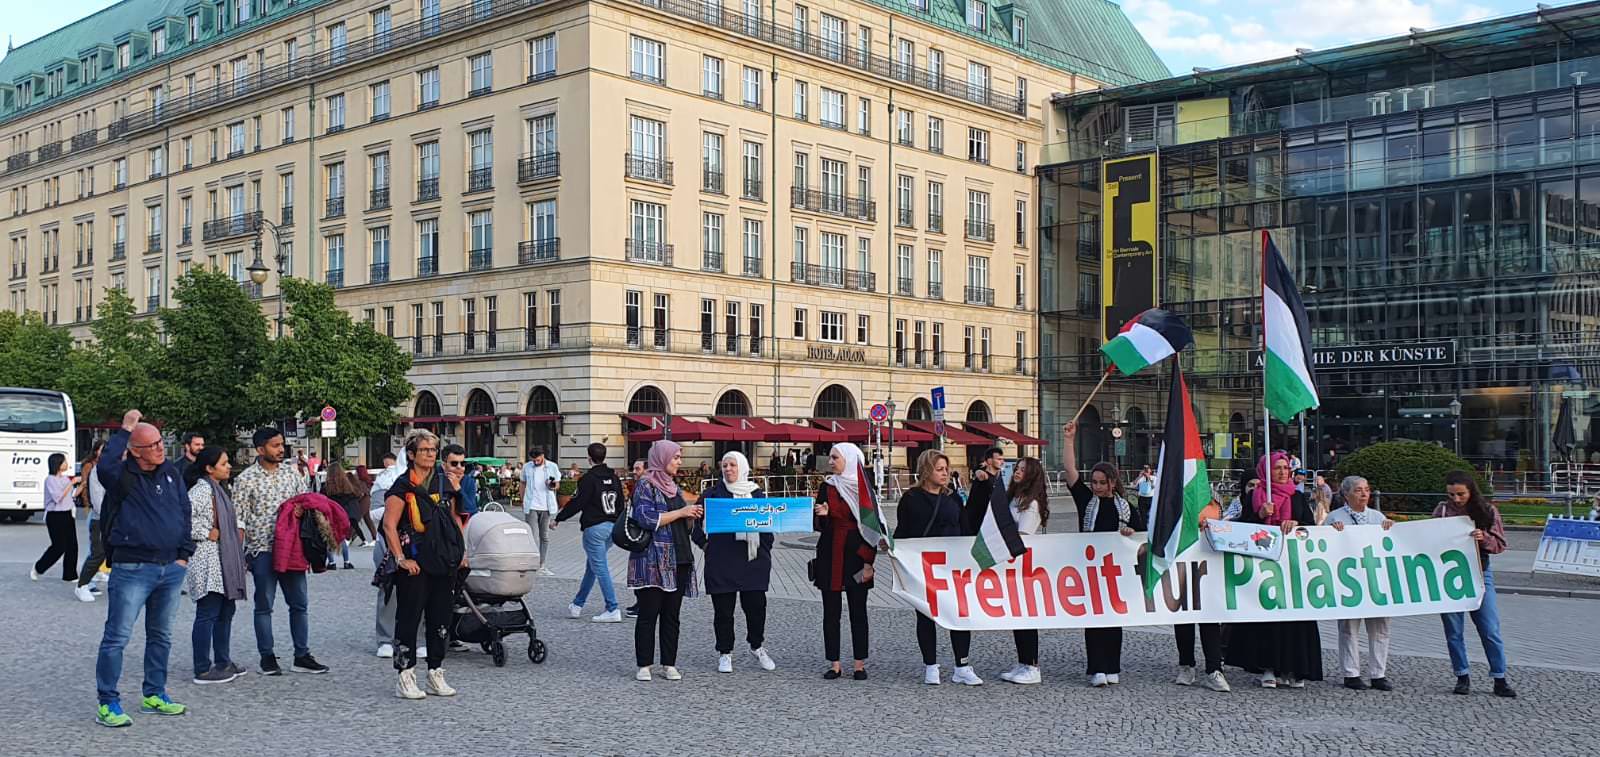 وقفة جماهيرية في برلين .. للمطالبة بإطلاق سراح الأسرى الفلسطينيين ووقف الإعتقال الإداري